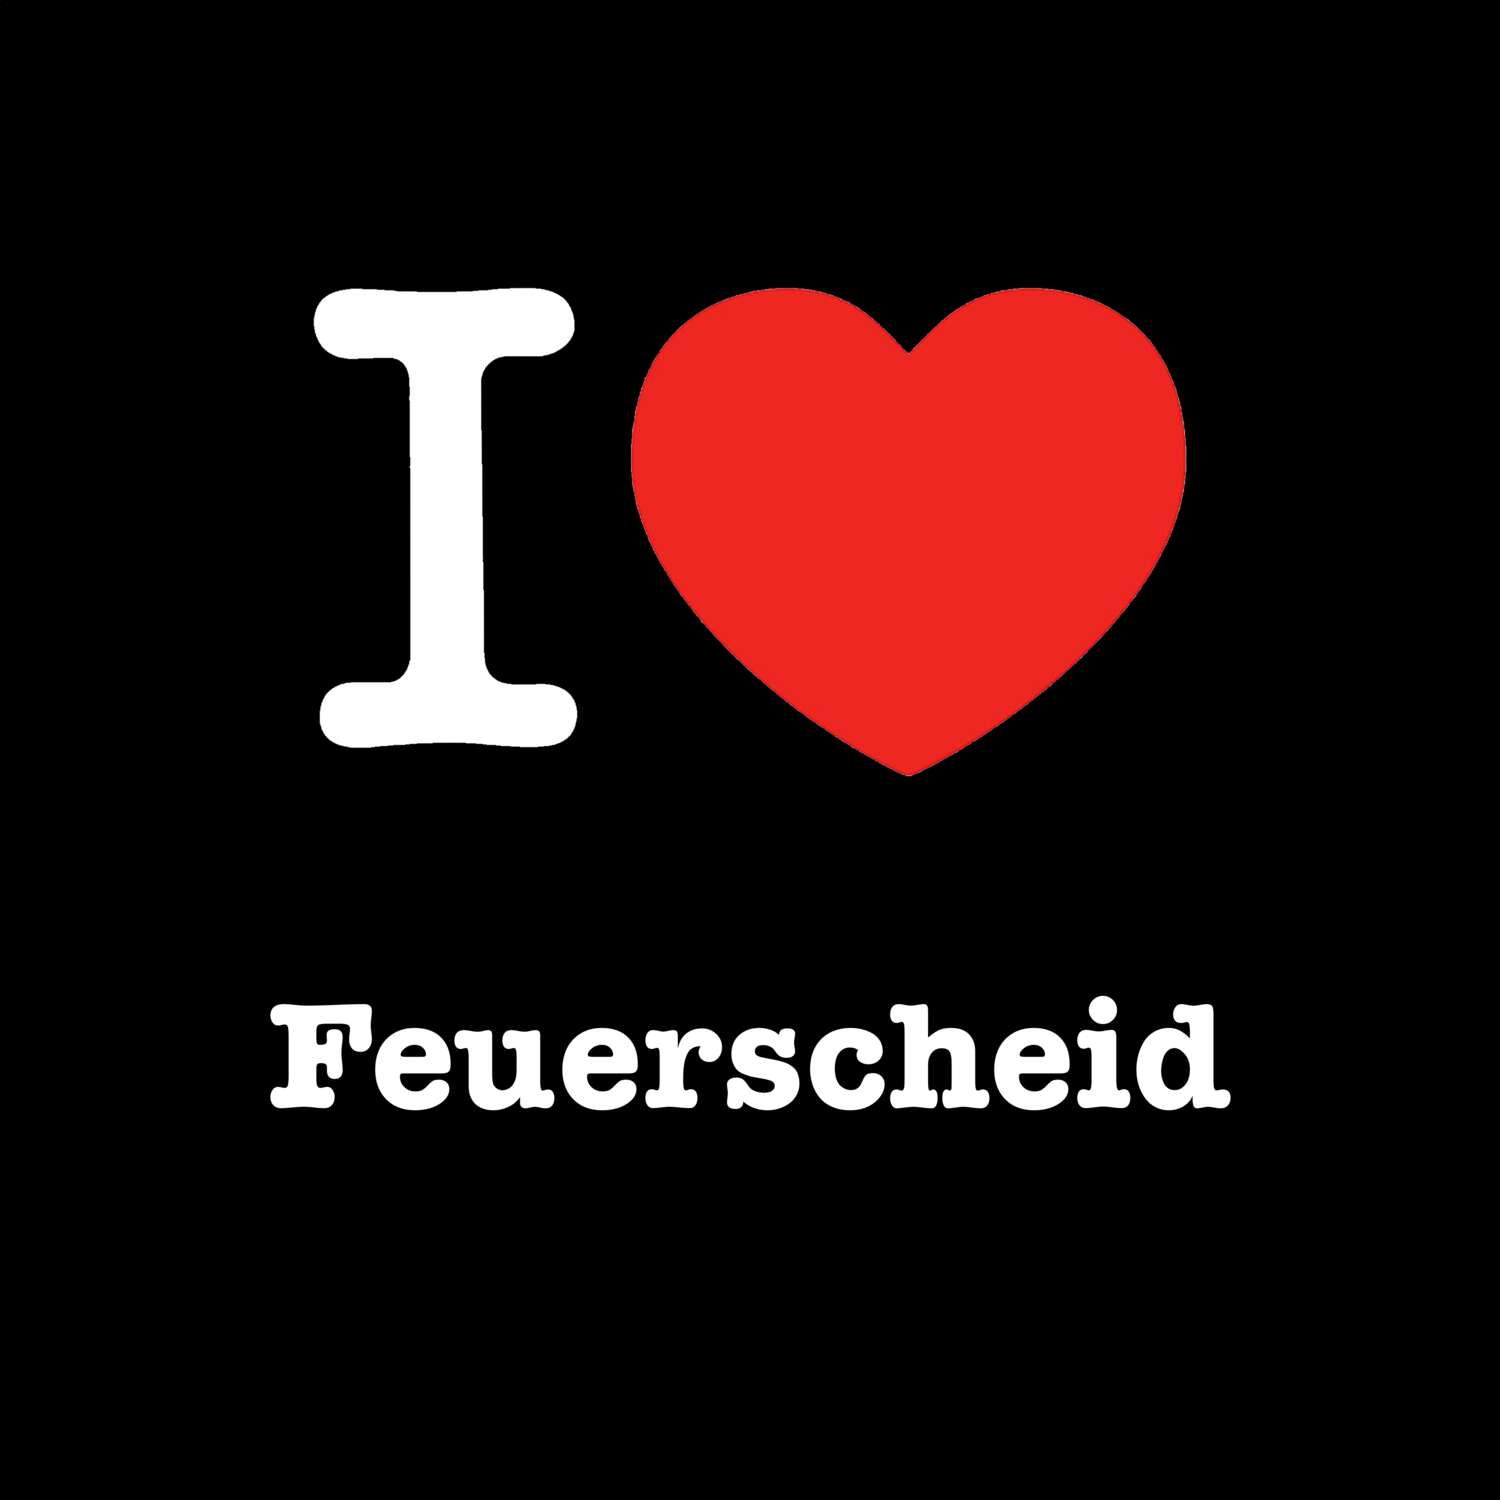 Feuerscheid T-Shirt »I love«